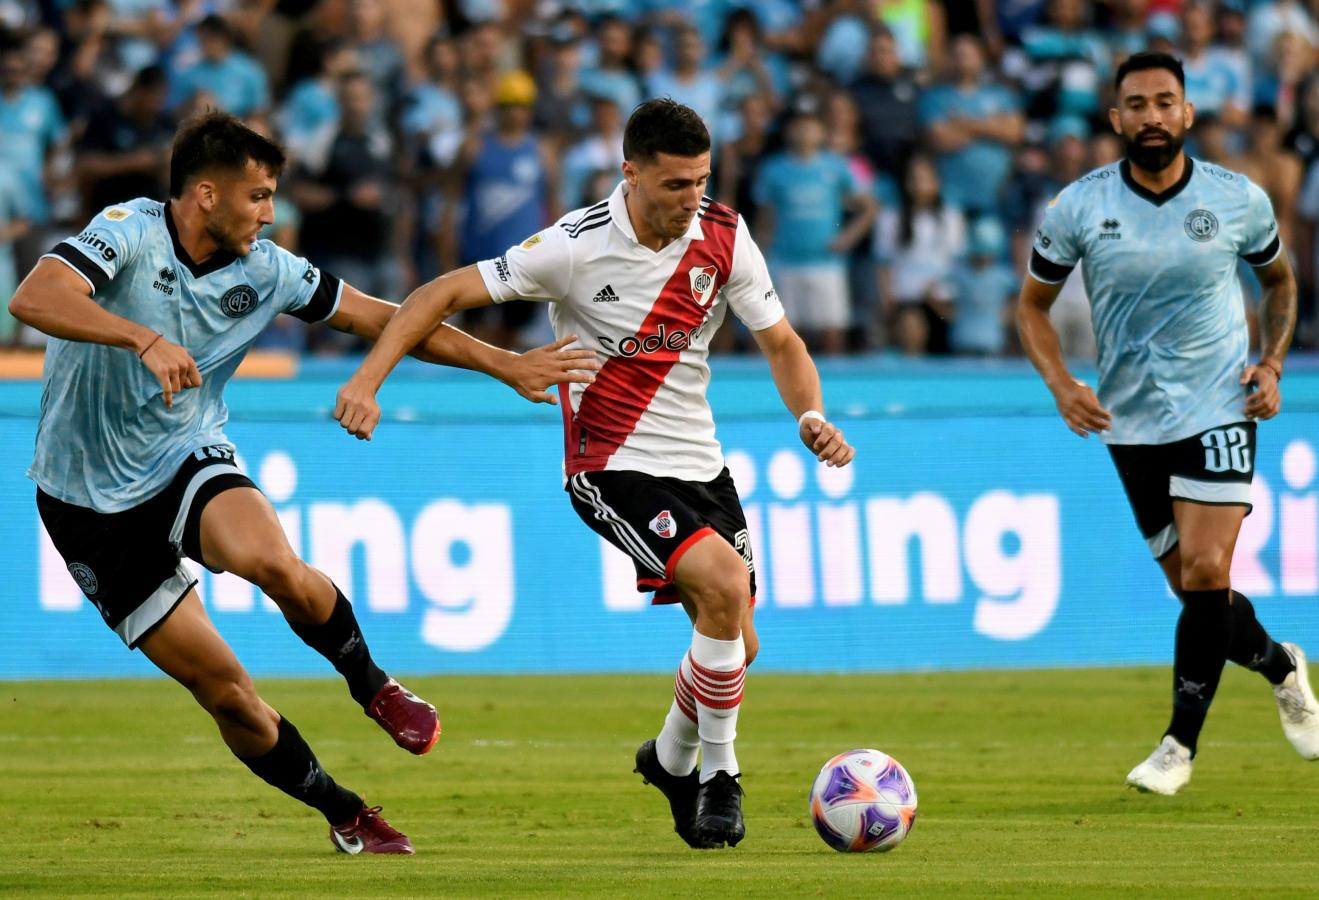 Pronóstico para el partido River Plate vs Belgrano 18.05